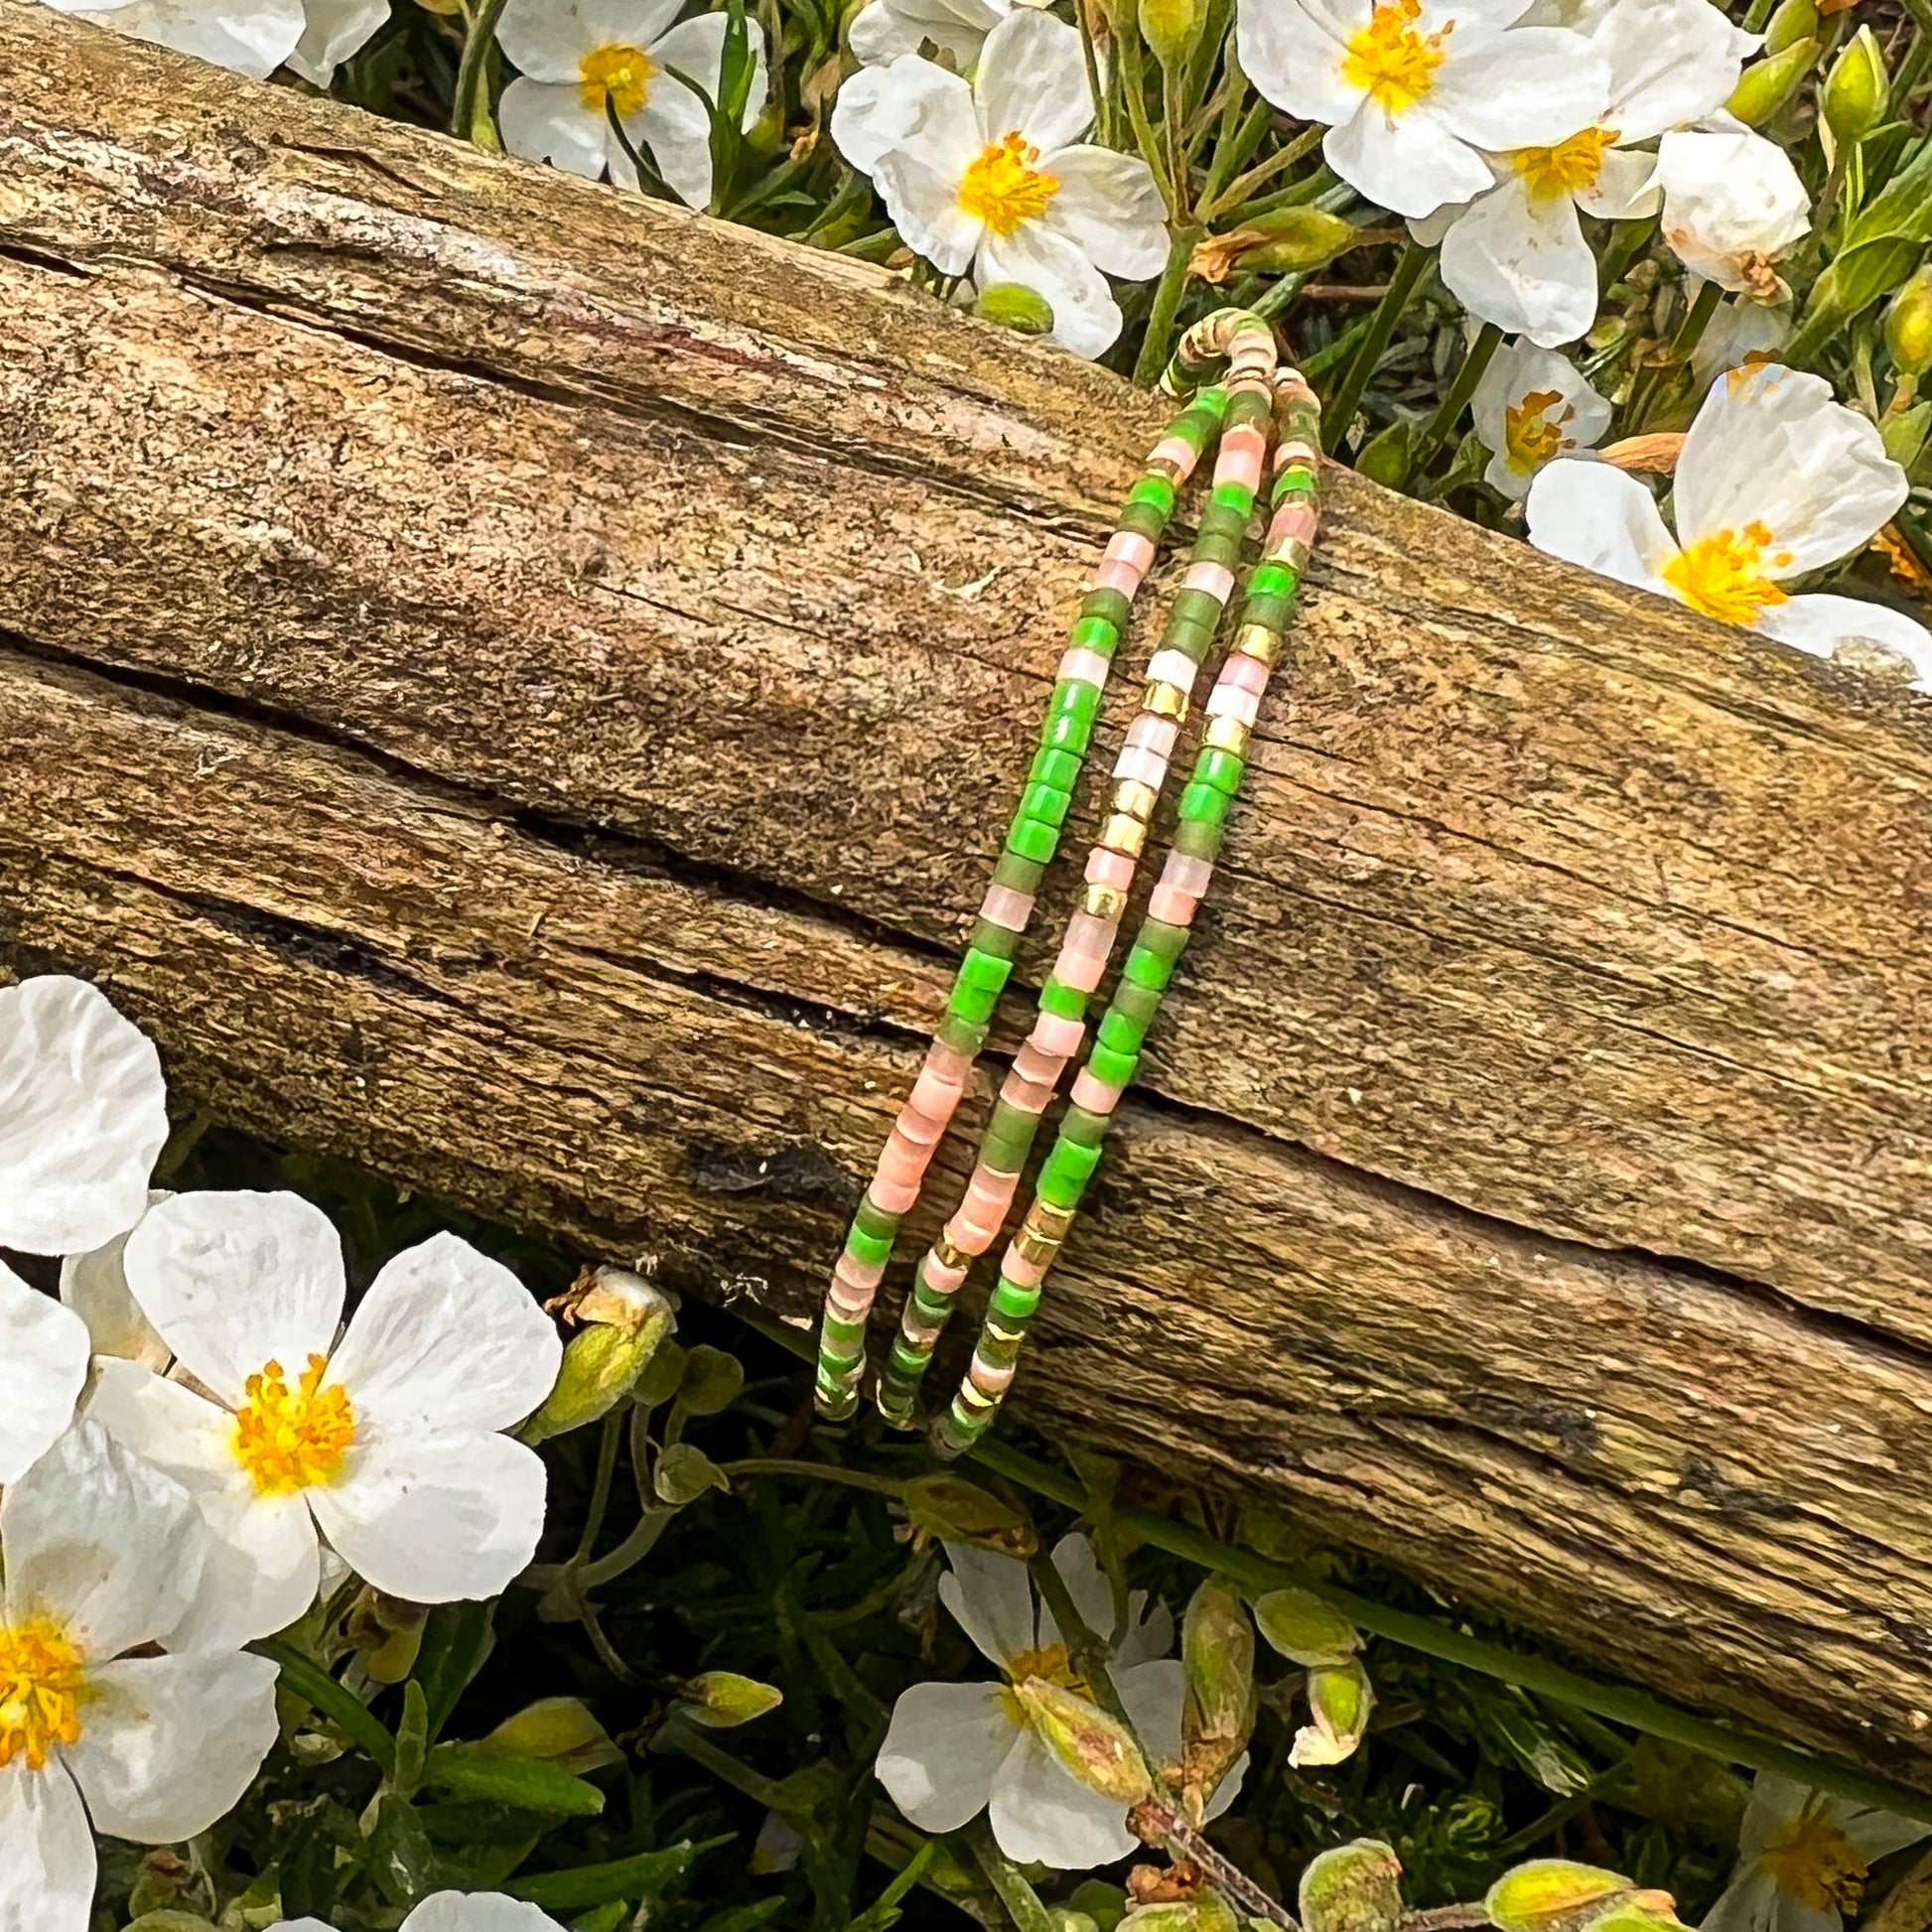 Bracelet ajustable en pierre de rocaille vert, rose et or. Trois tours de poignet